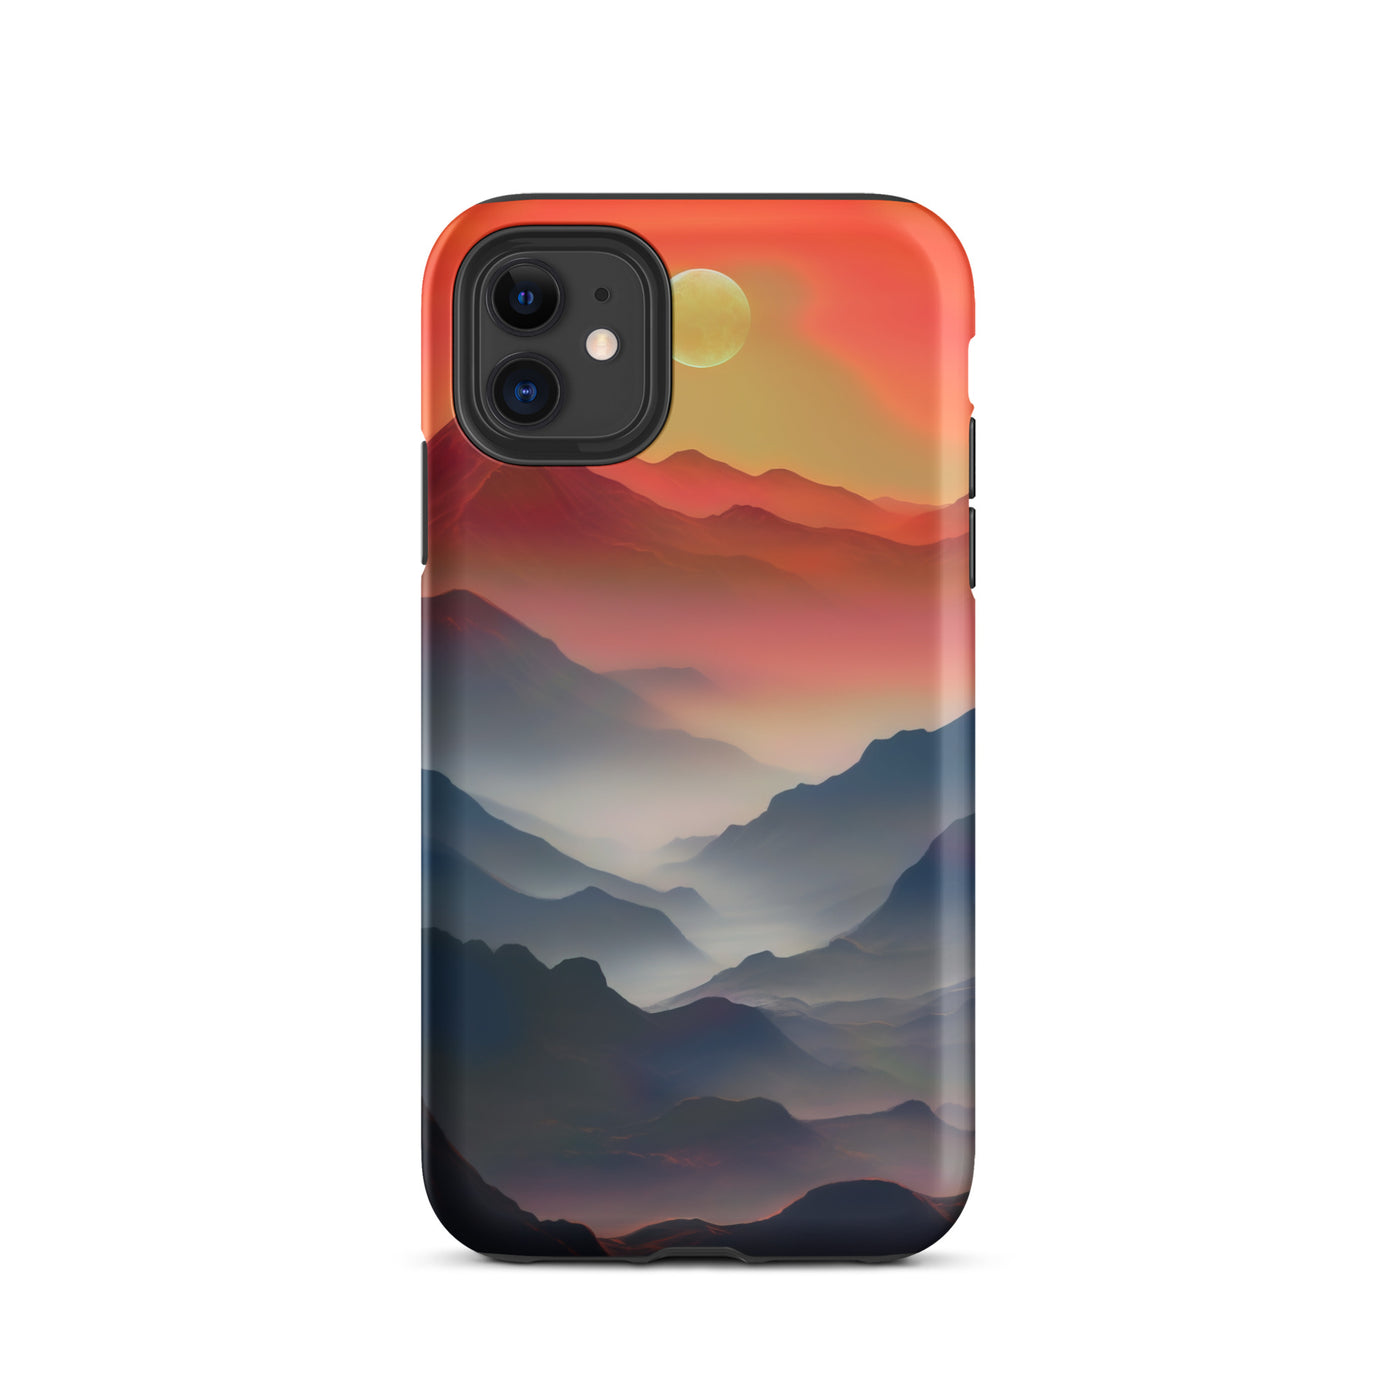 Sonnteruntergang, Gebirge und Nebel - Landschaftsmalerei - iPhone Schutzhülle (robust) berge xxx iPhone 11